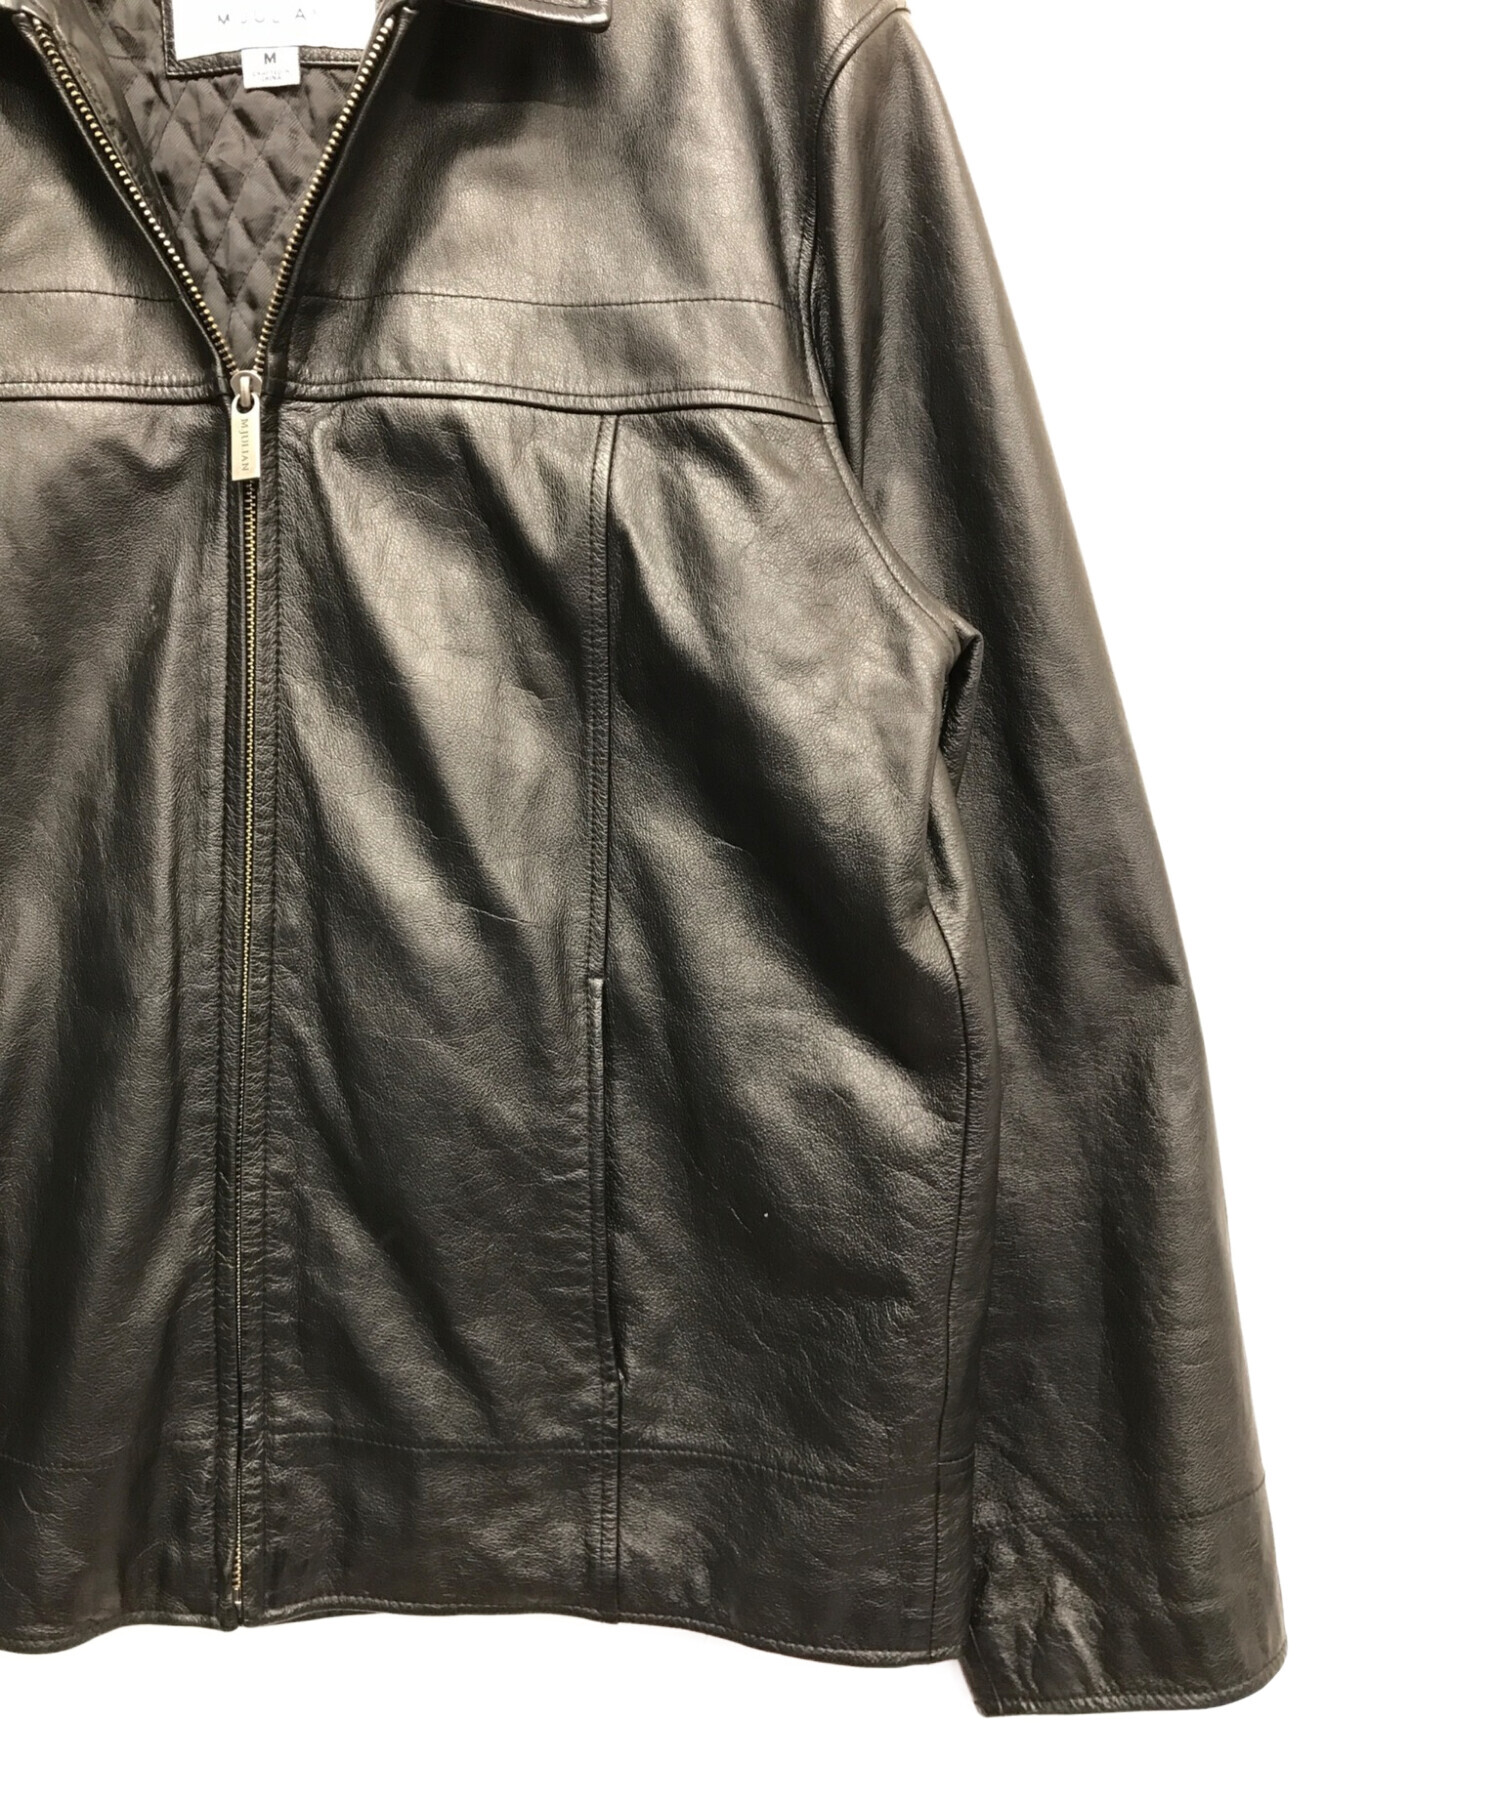 wilsons leather (ウィルソンズレザー) レザージャケット ブラック サイズ:M